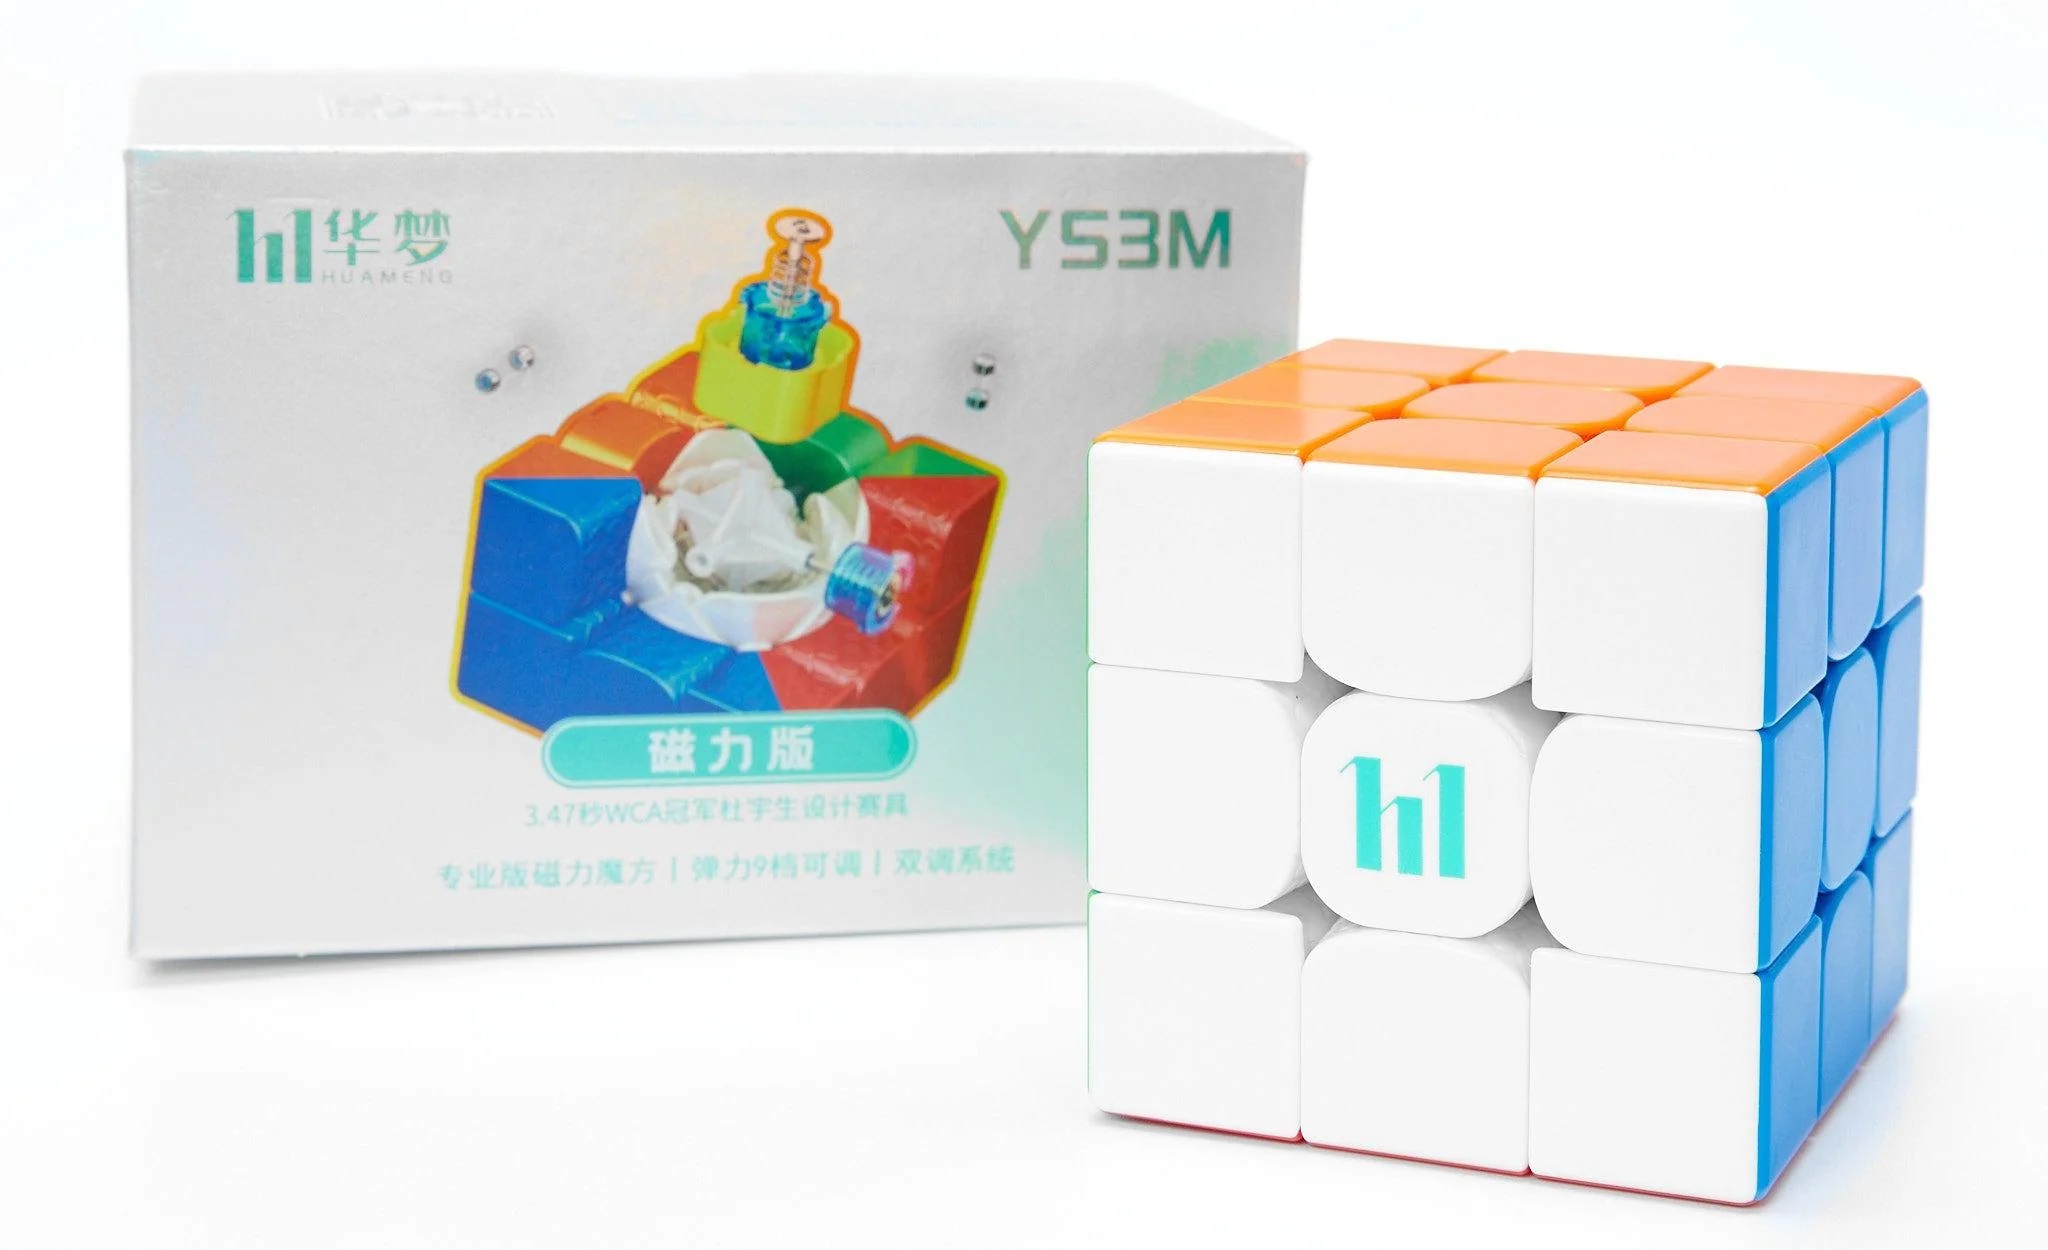  Y.L. DOYMX Cubo magnético 3 x 3 – Moyu & HuaMeng YS3M